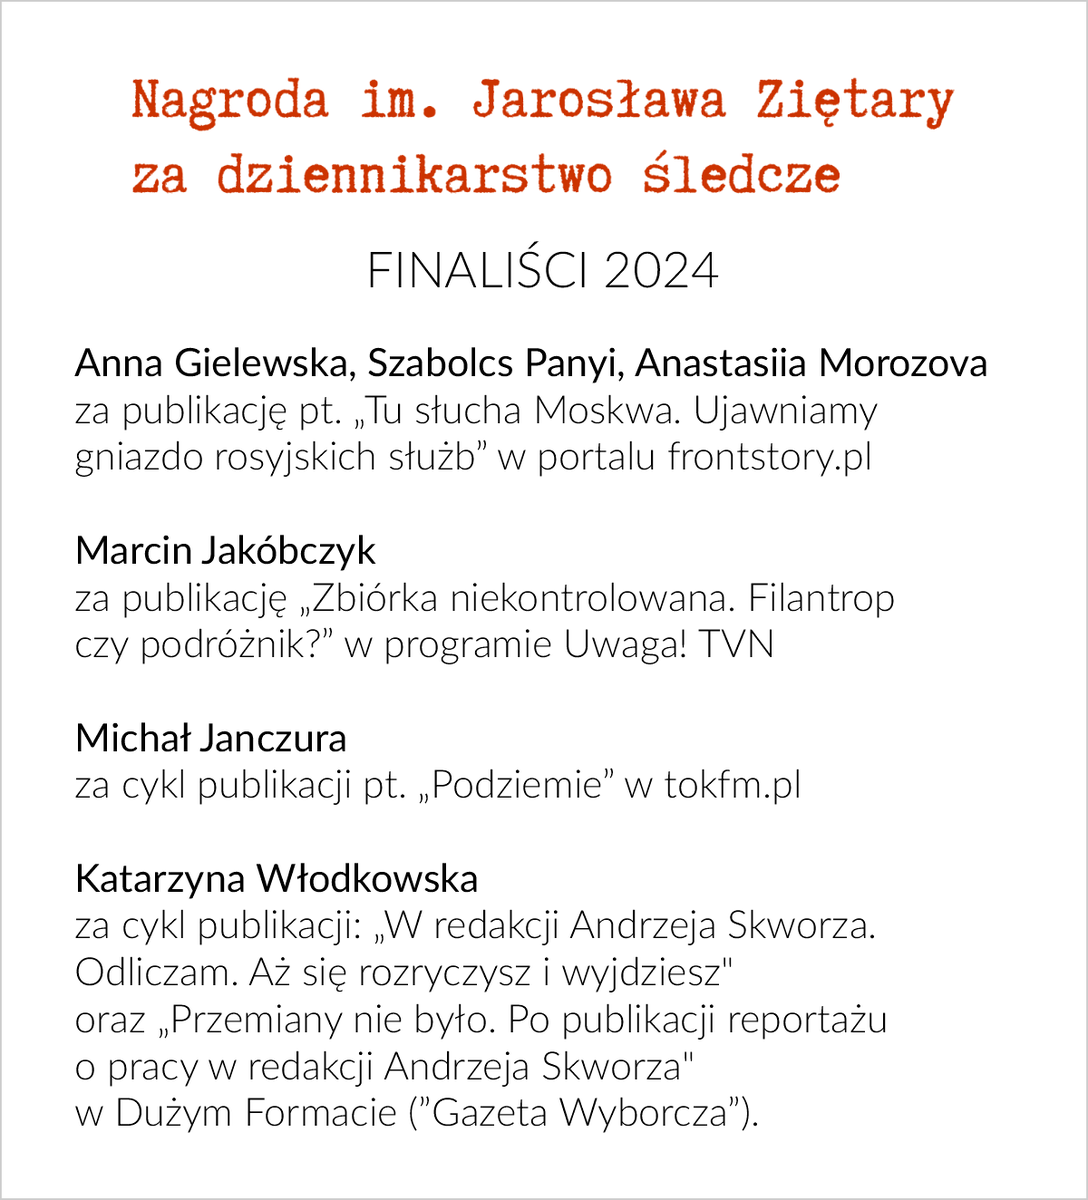 Finaliści #NagrodaZietary 2024: @agielewska @panyiszabolcs @nst_morozova, @MarcinJakobczyk, @jan_czura i @k_wlodkowska.